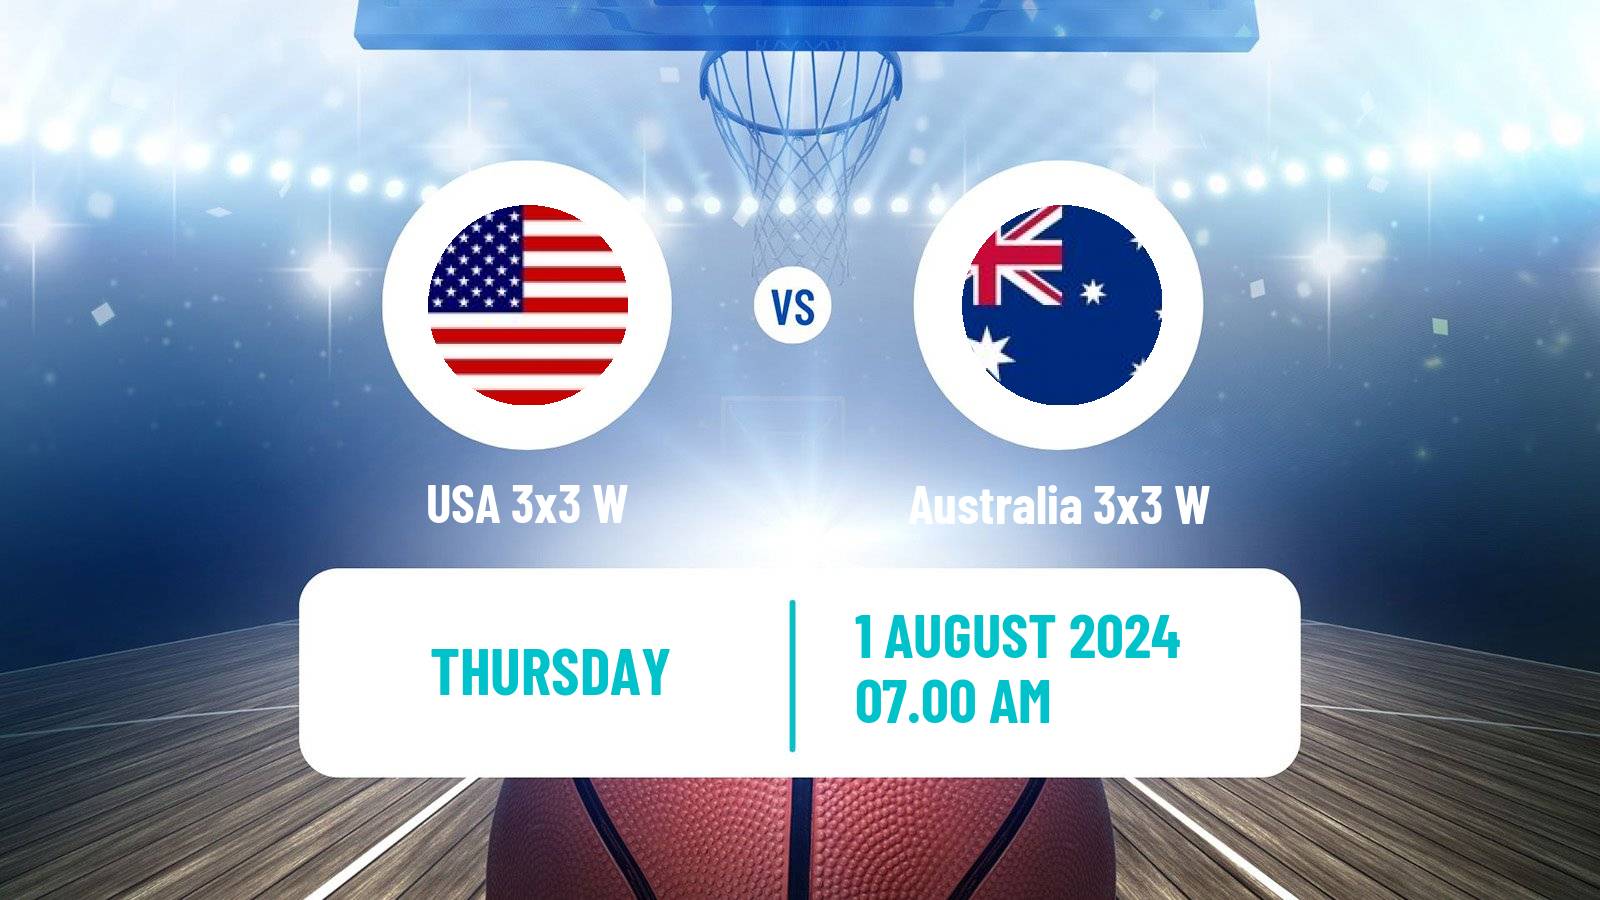 Basketball Olympic Games Basketball 3x3 Women USA 3x3 W - Australia 3x3 W